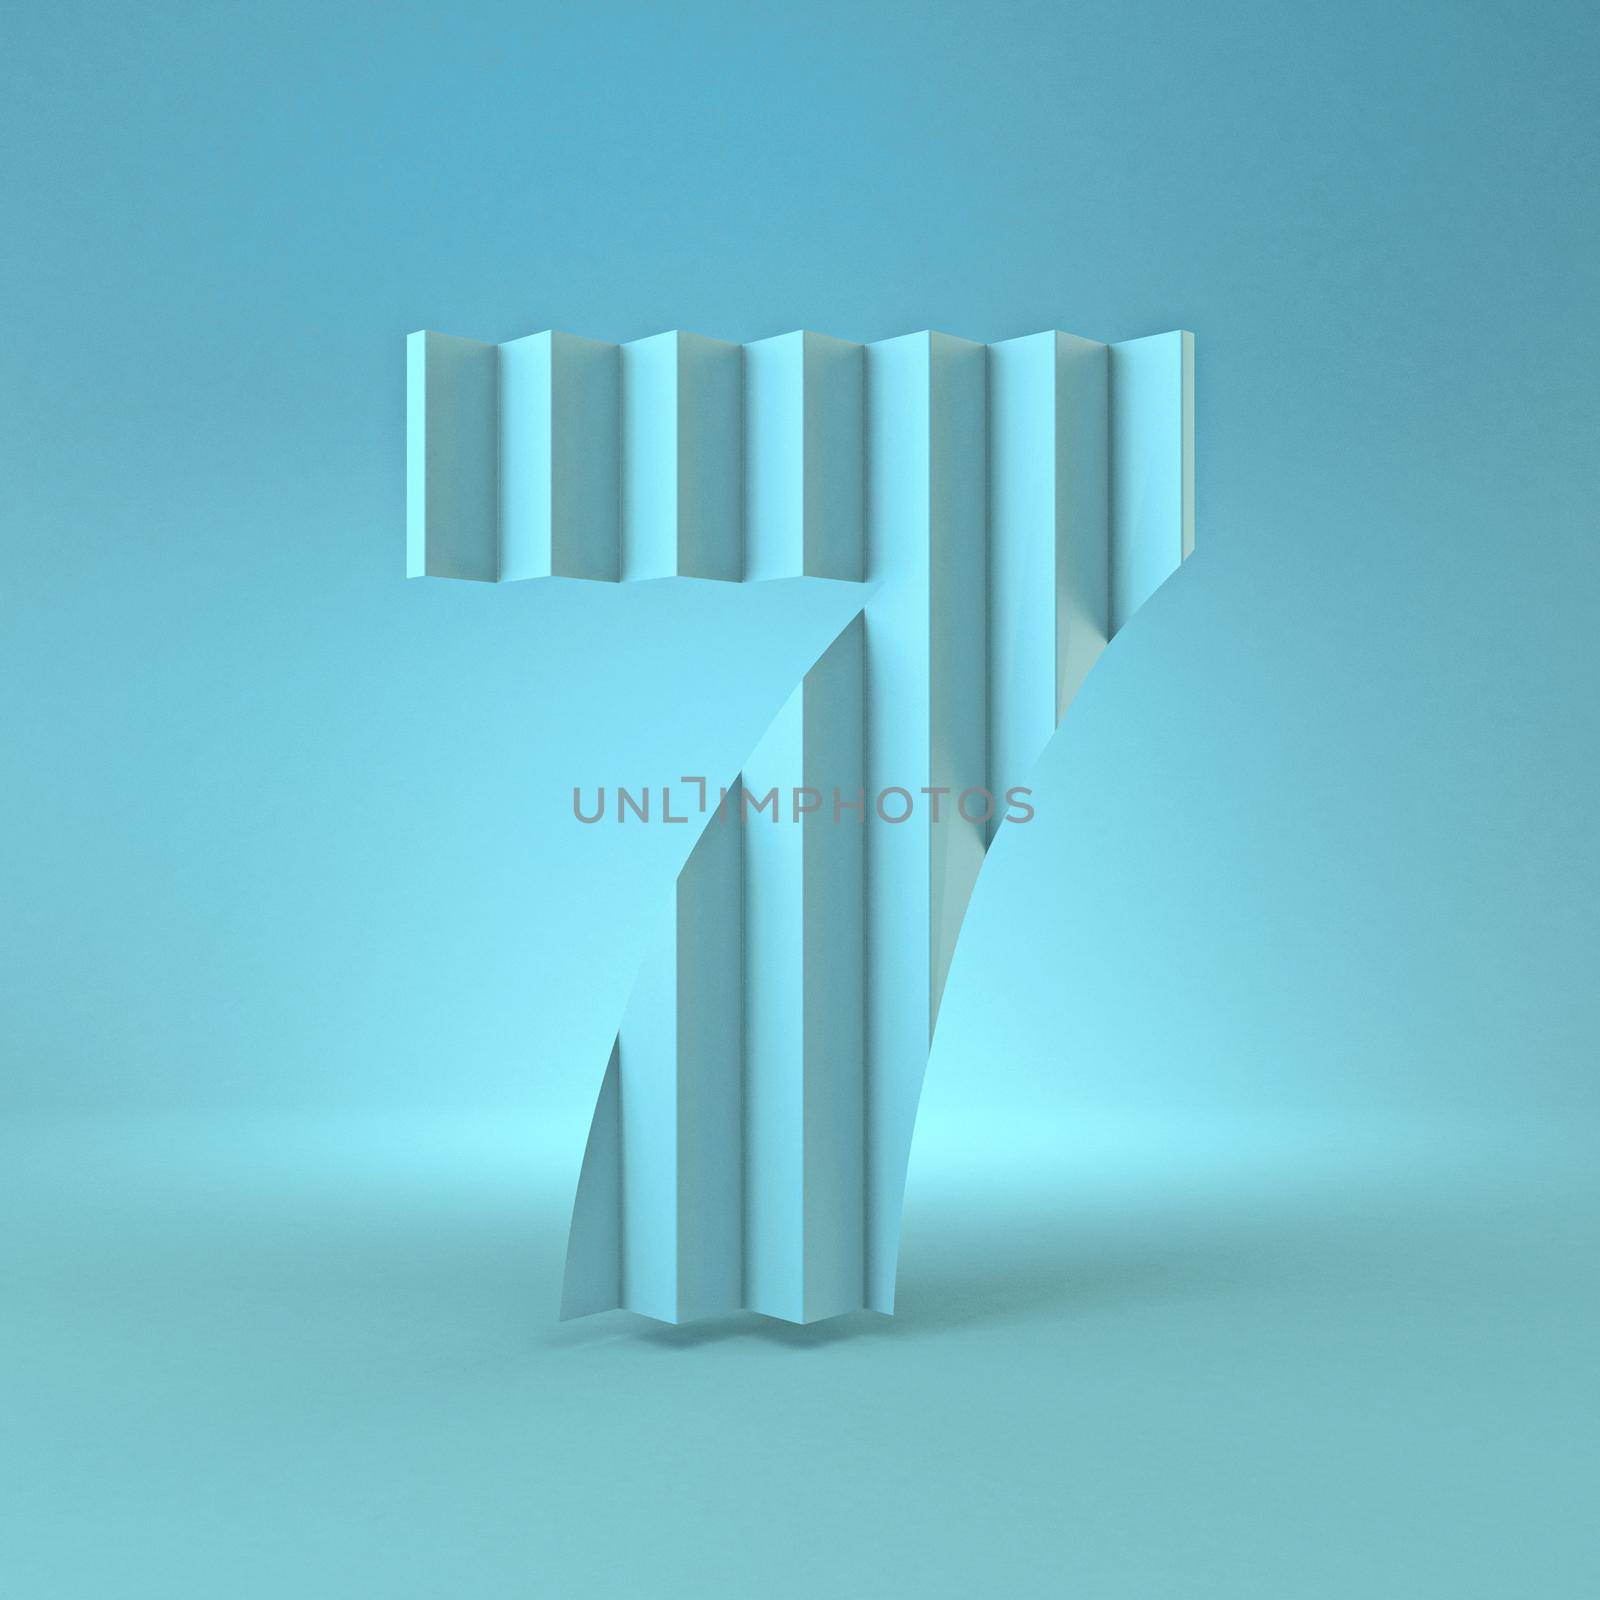 Cold blue font Number 7 SEVEN 3D render illustration on blue background